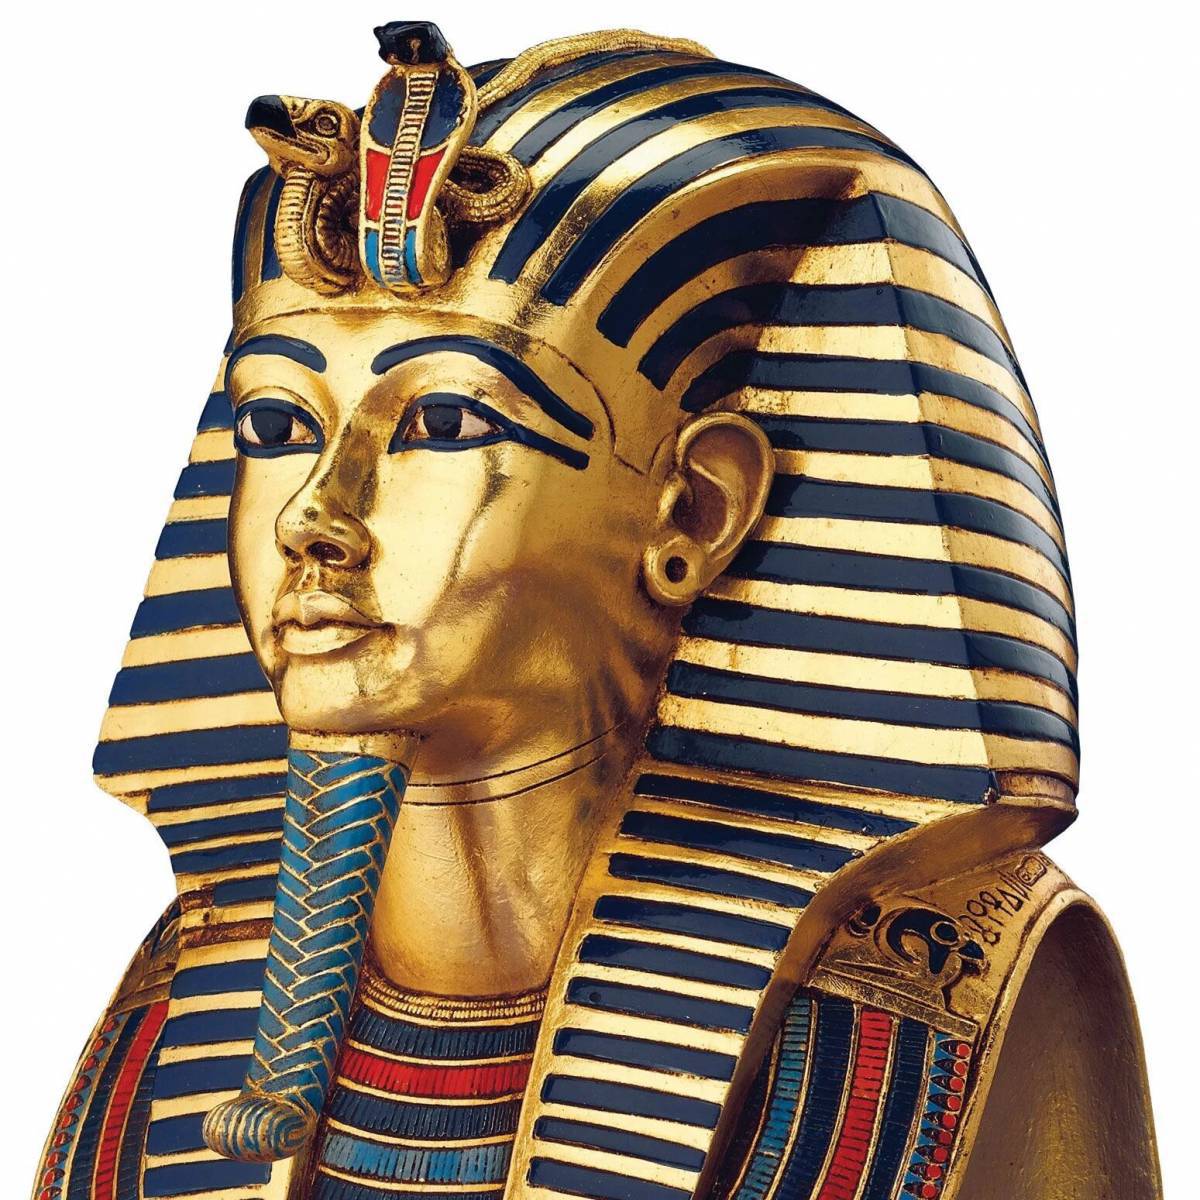 все фараоны древнего египта